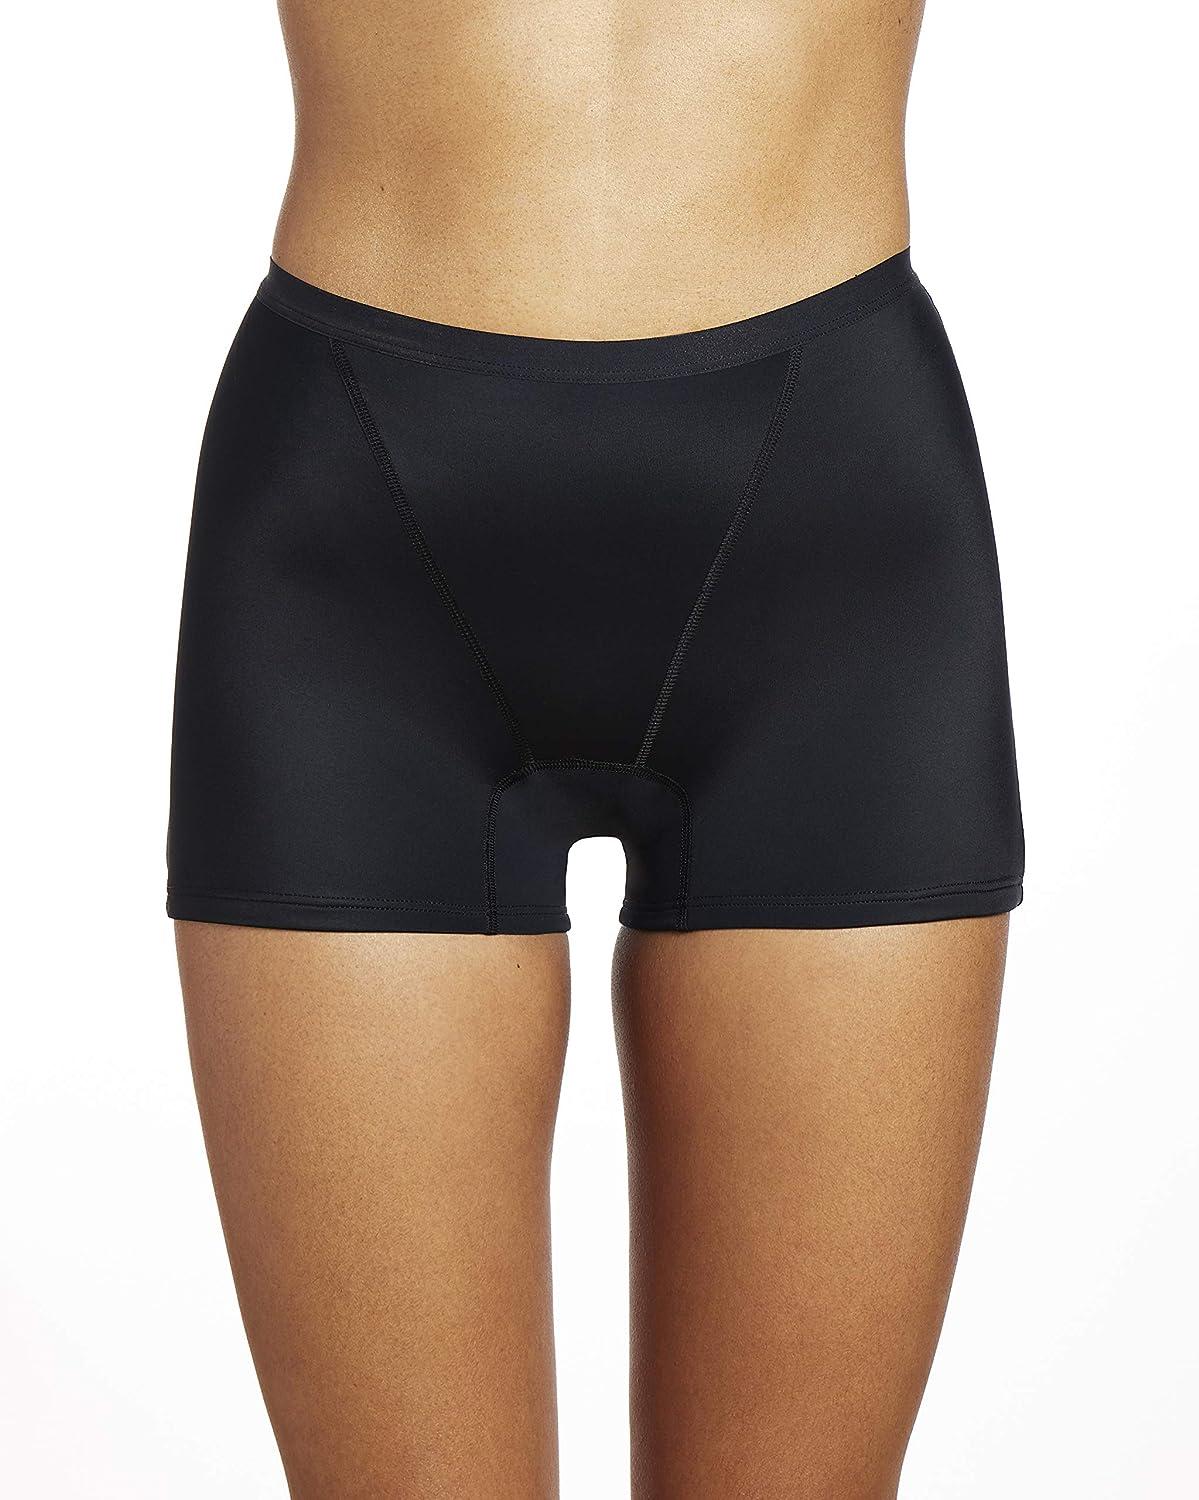  THINX Modal Cotton Brief Period Underwear for Women